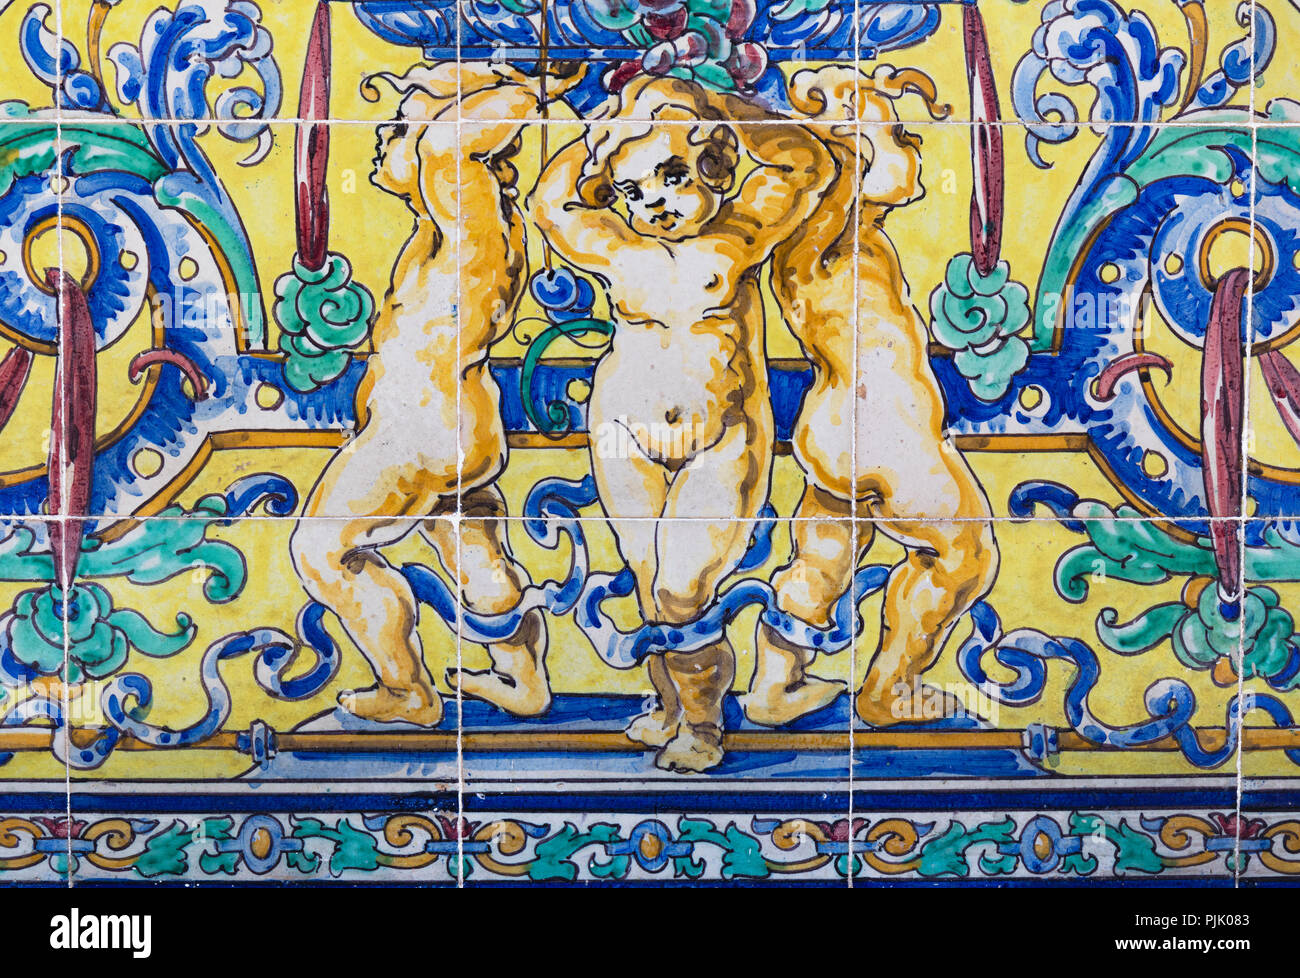 Les carreaux en céramique de Trois putti. Datant de la fin du xixe siècle. Malaga, Espagne. Banque D'Images